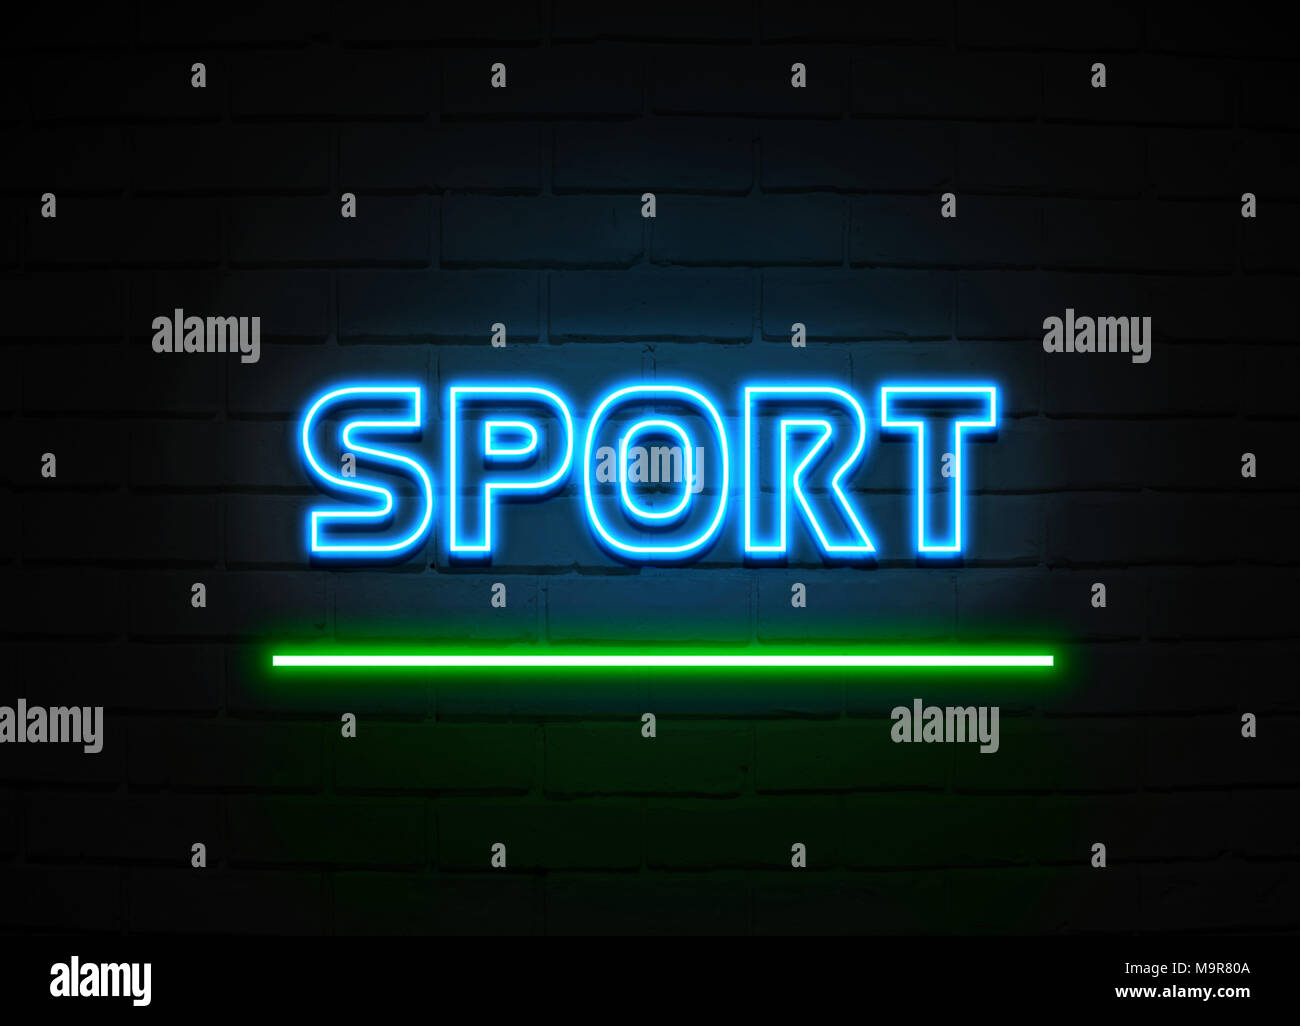 Sport Leuchtreklame - glühende Leuchtreklame auf brickwall Wand - 3D-Royalty Free Stock Illustration dargestellt. Stockfoto